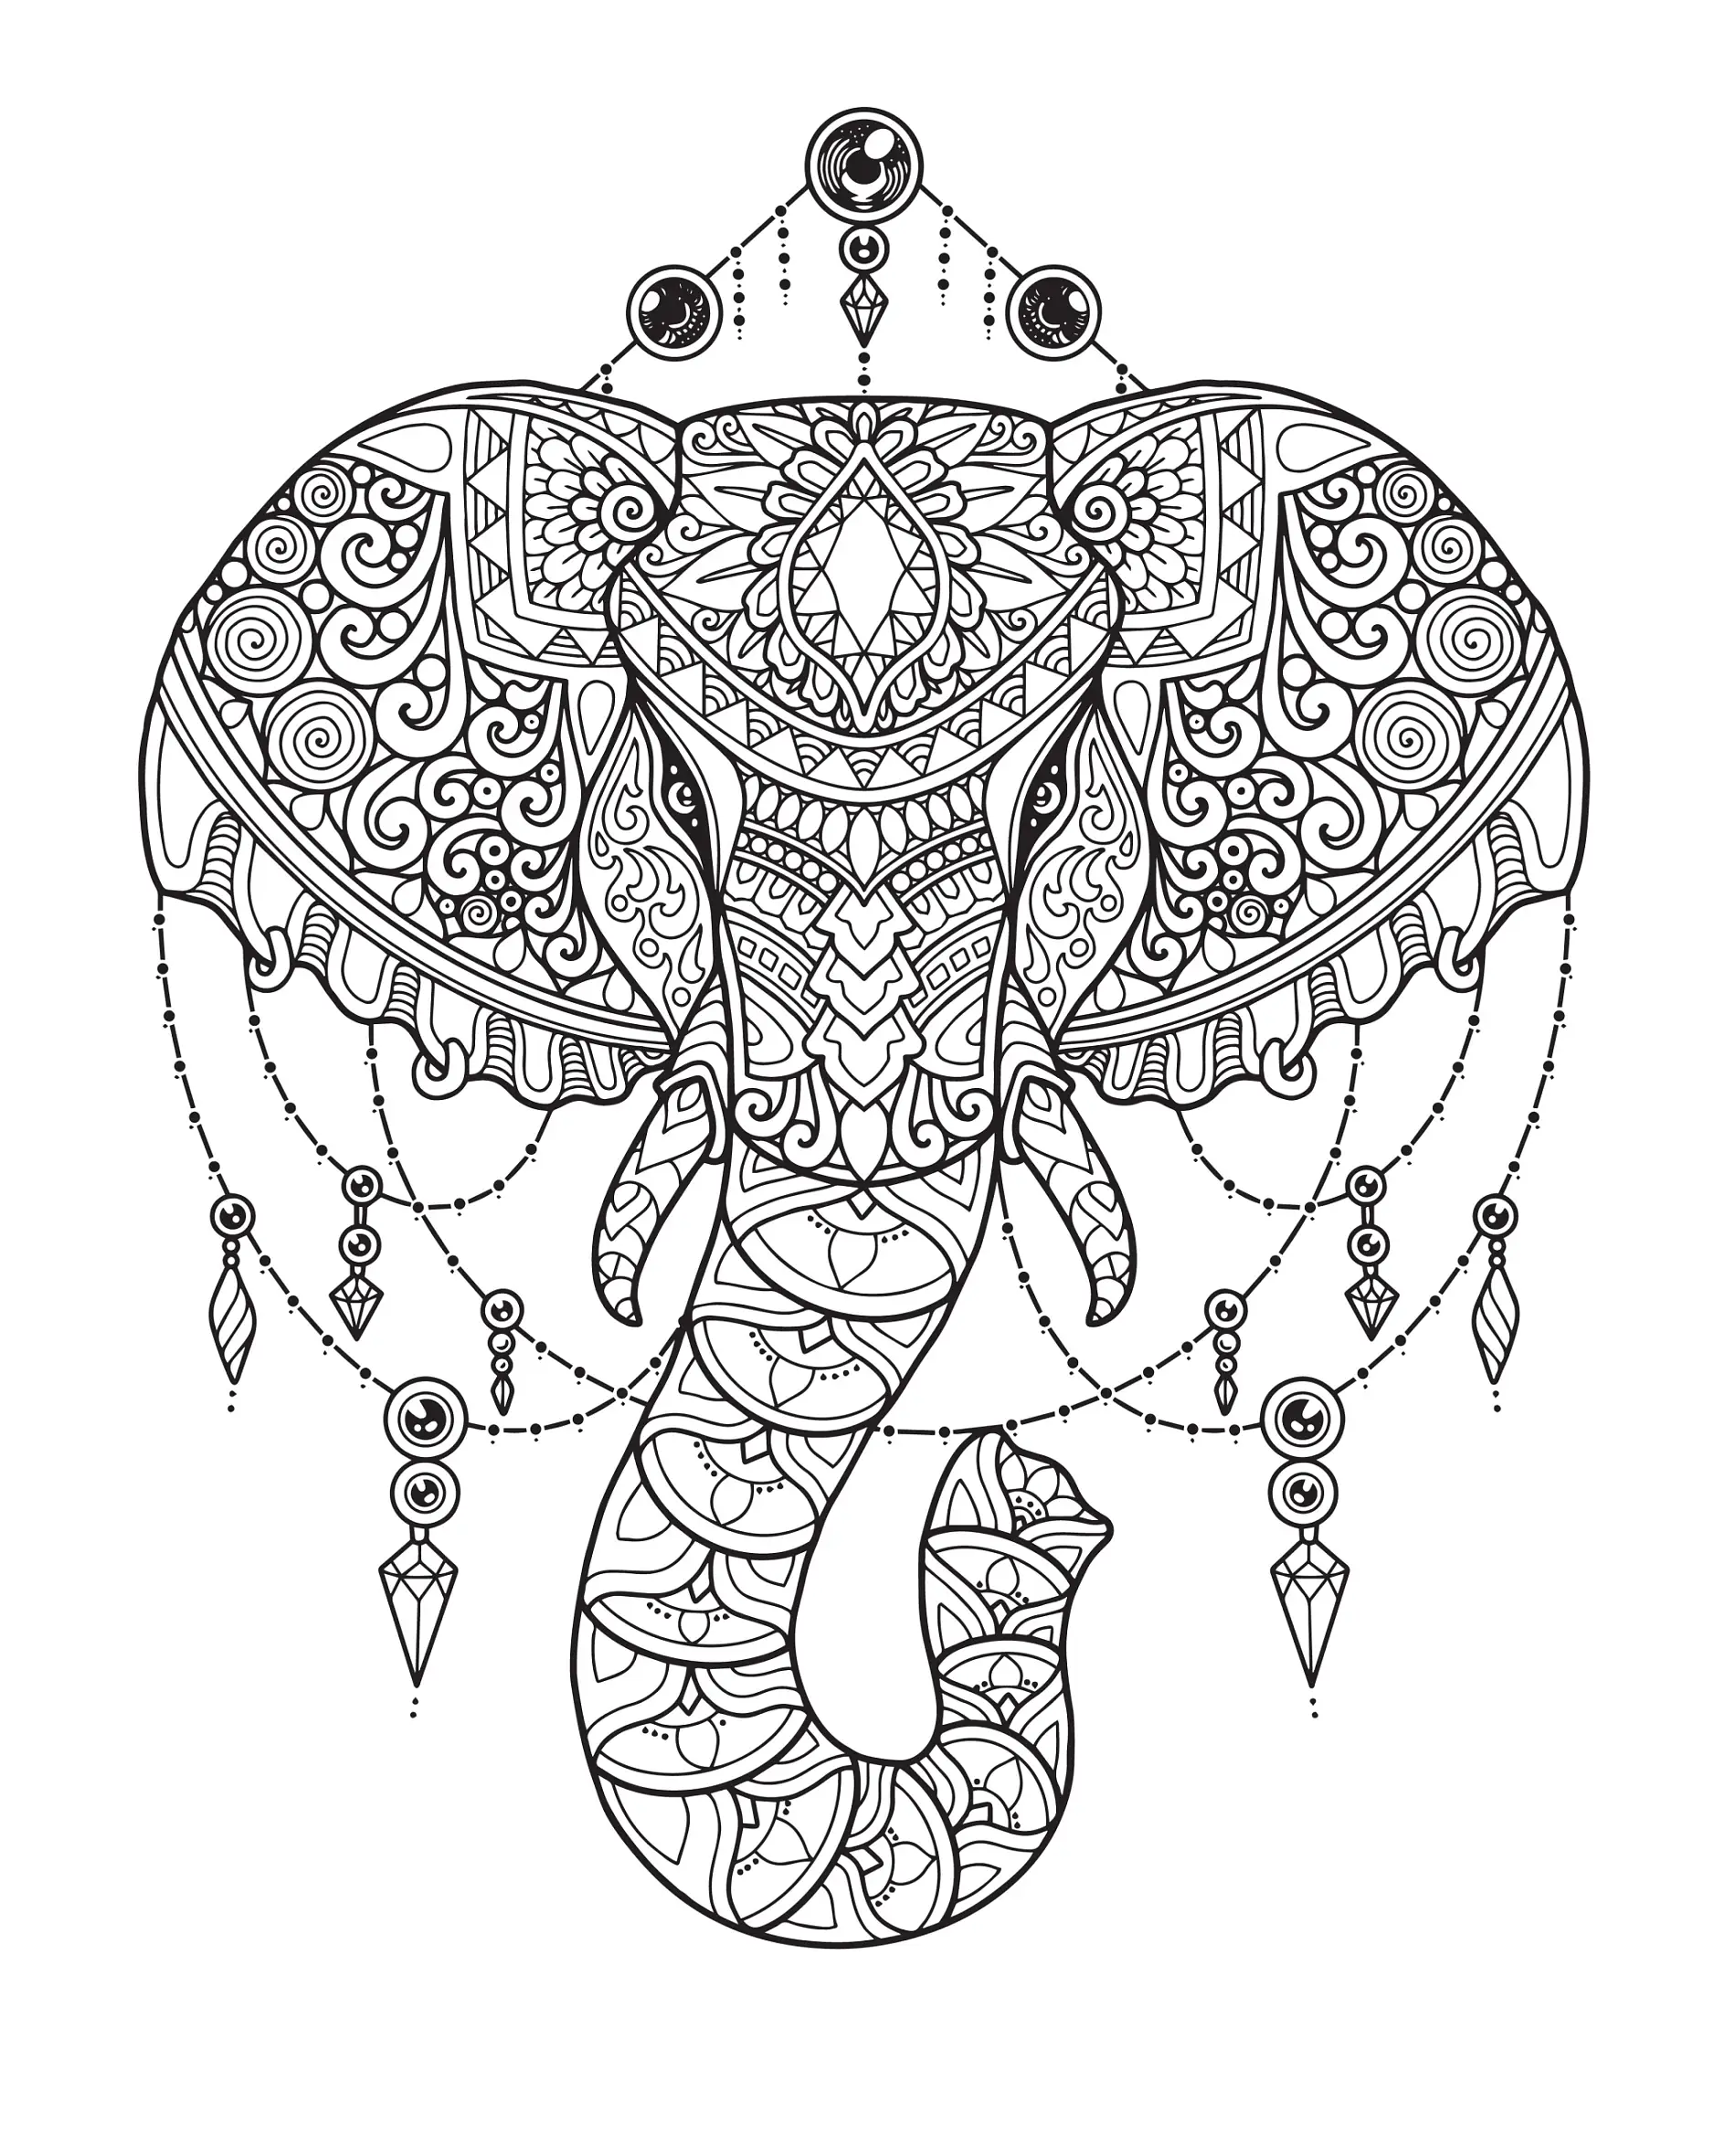 Ausmalbild Mandala Elefant mit verzierenden Schmuckelementen und komplexen Mustern